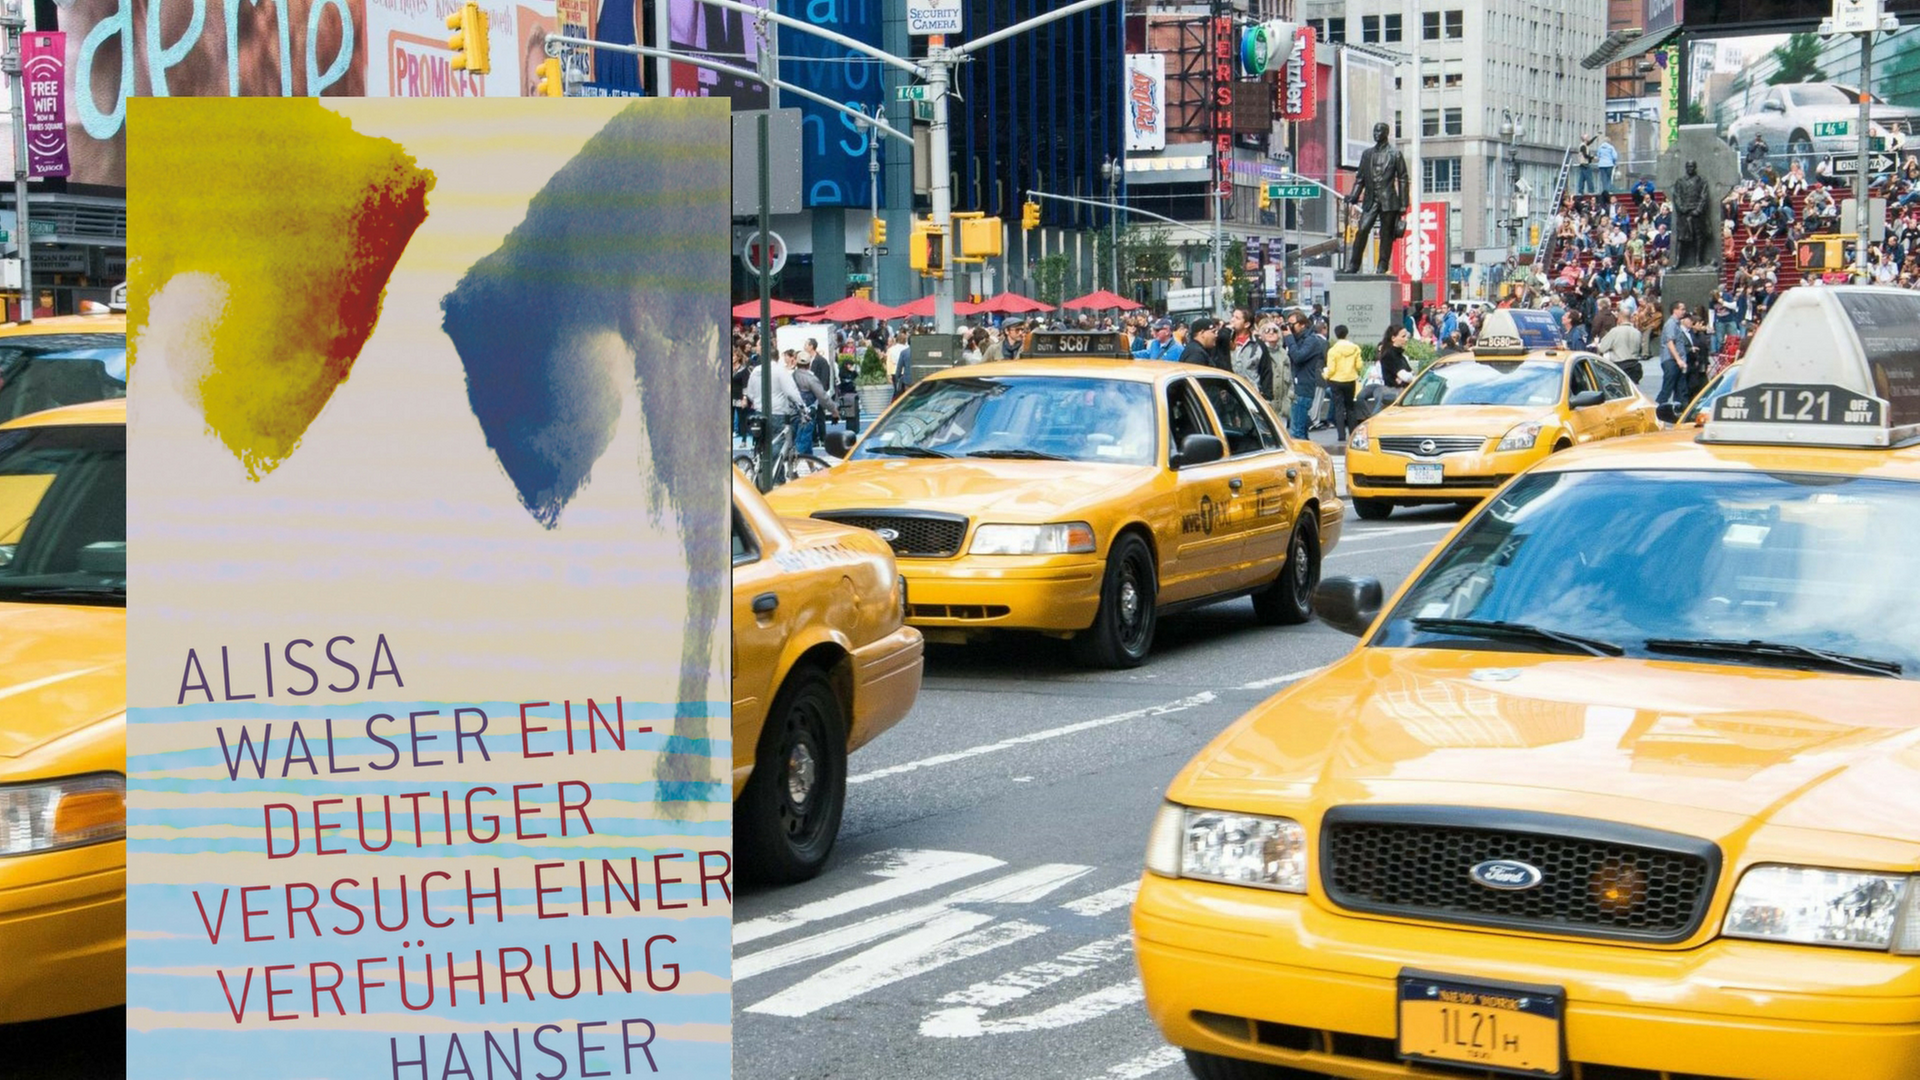 Cover von "Eindeutiger Versuch einer Verführung" von Alissa Walser vor einer Straßenszene in New York City.